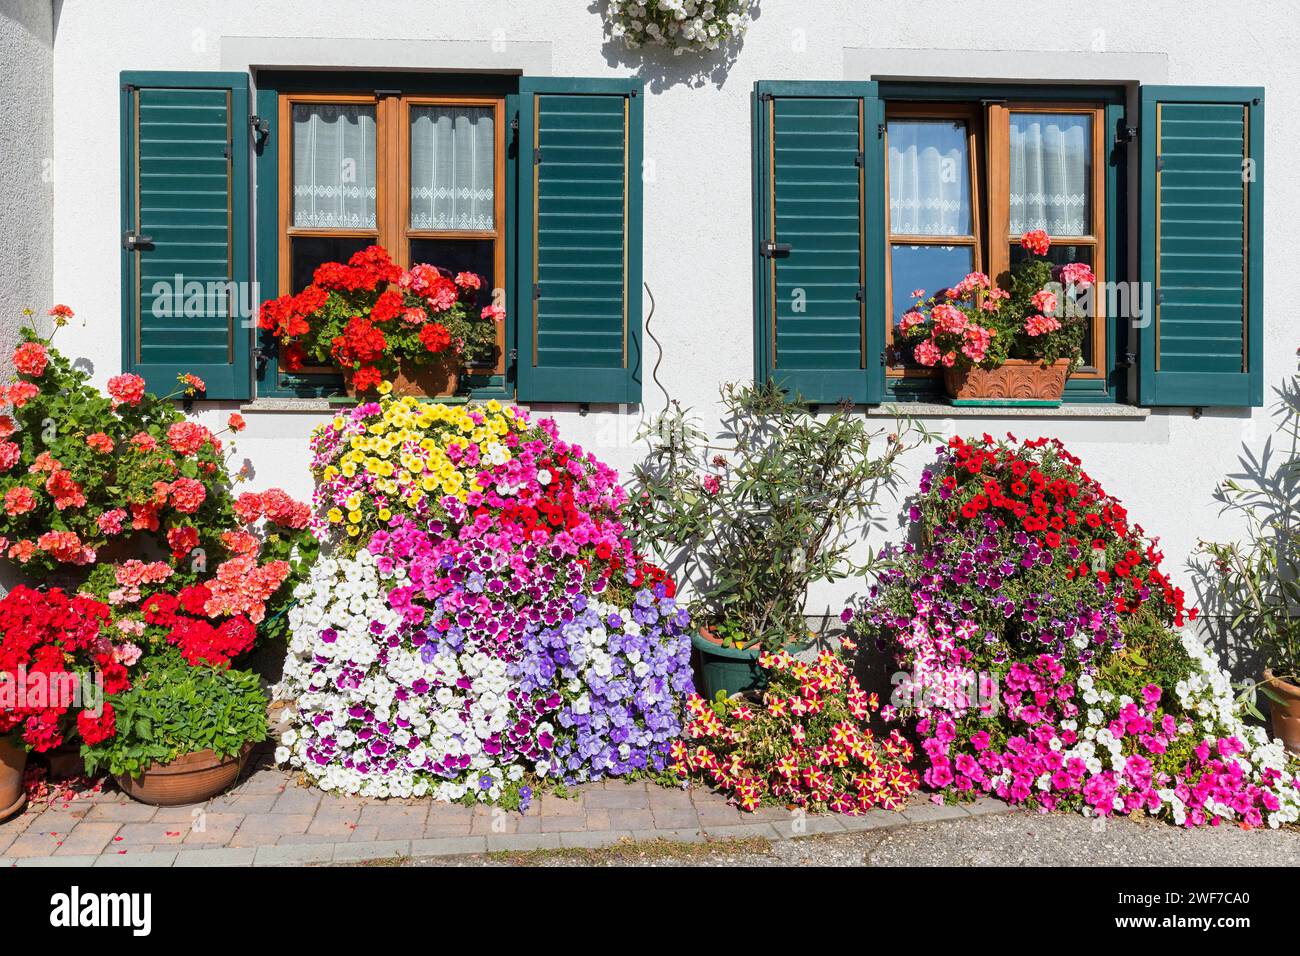 Blumen an einer Hausfassade, Fenster mit Fensterläden, Schladming, Steiermark, Österreich *** Flowers on a house facade, window with shutters, Schladm Stock Photo